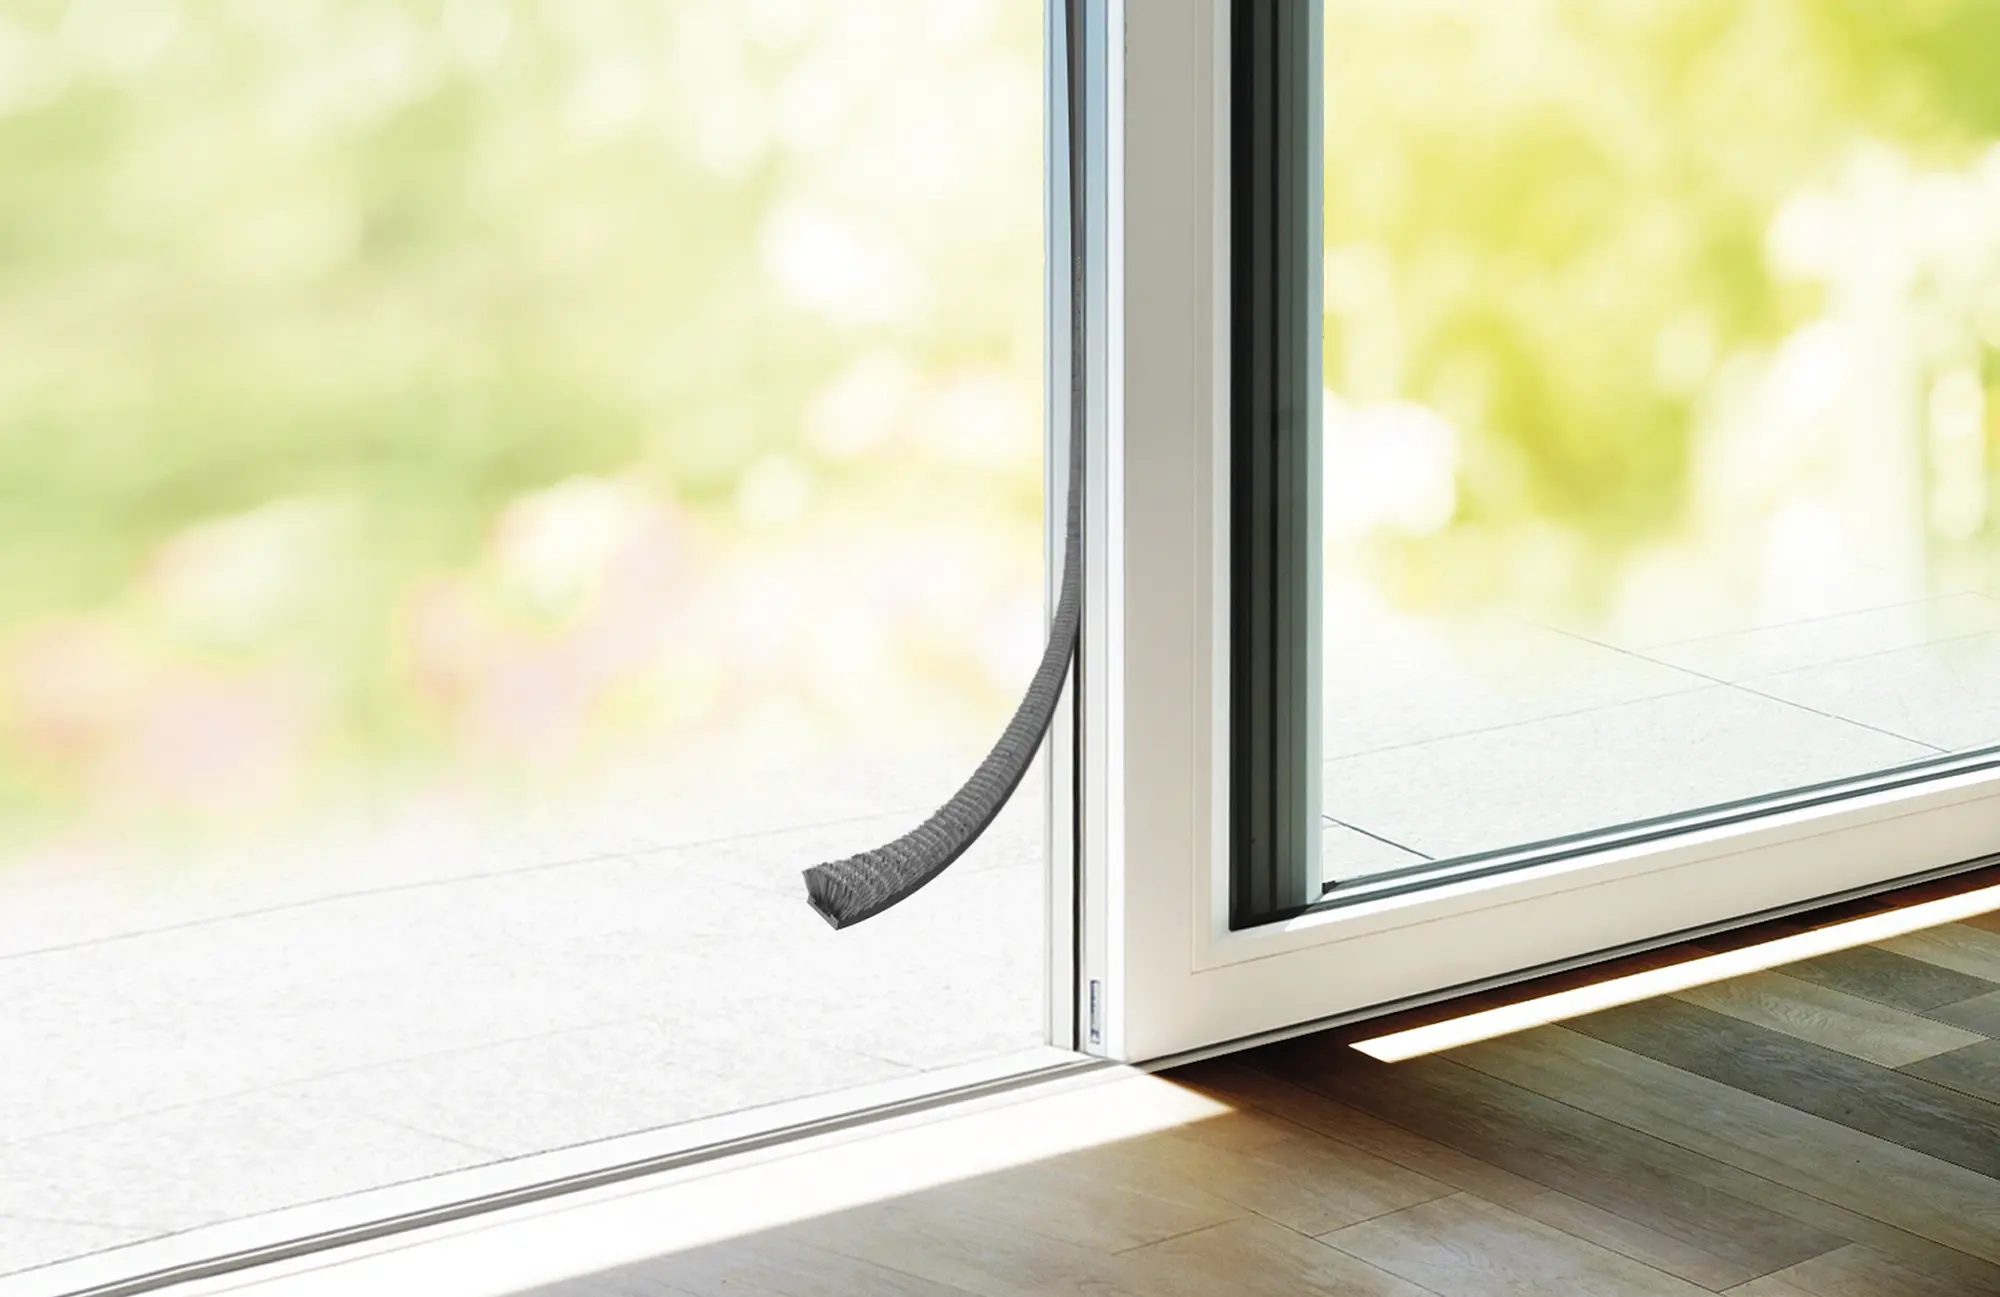 Aislamiento de ventanas: cómo colocar un burlete